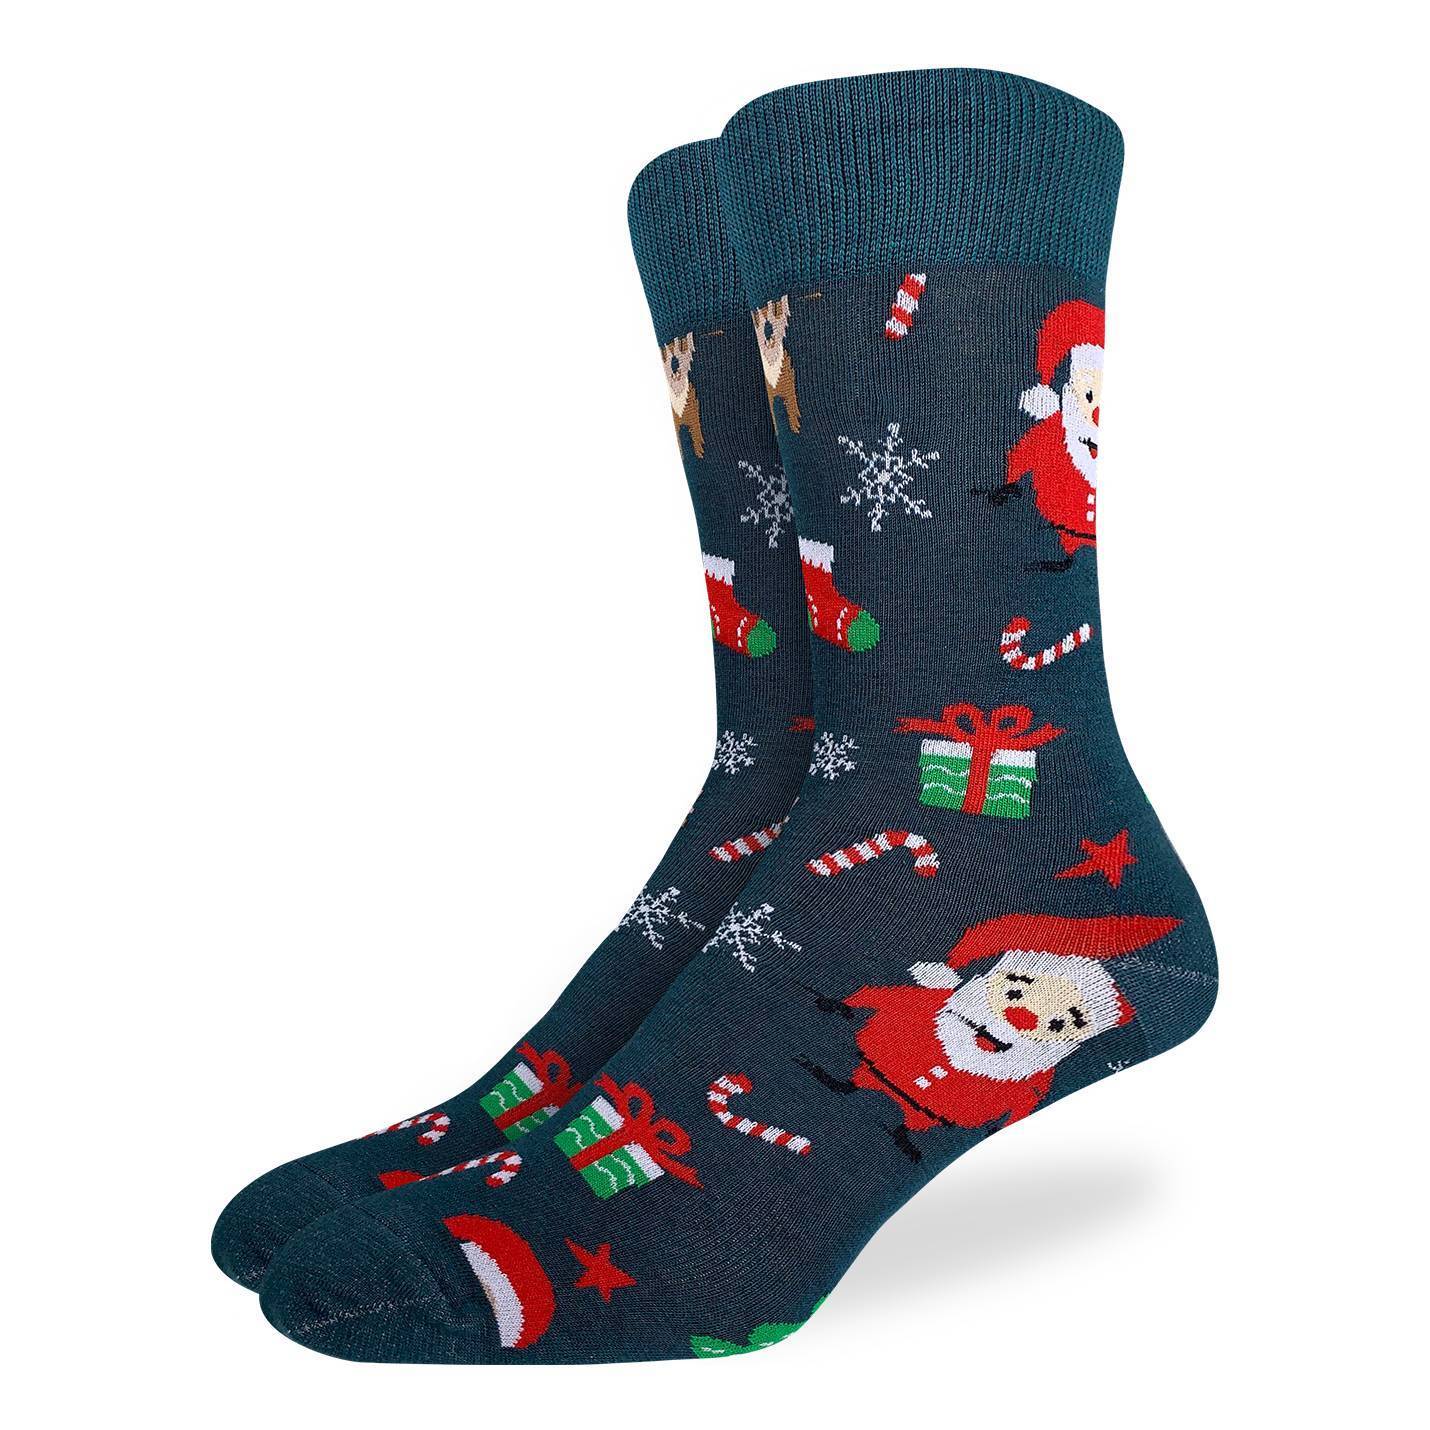 Men's Santa and Rudolph Socks - Shoe Size 7-12